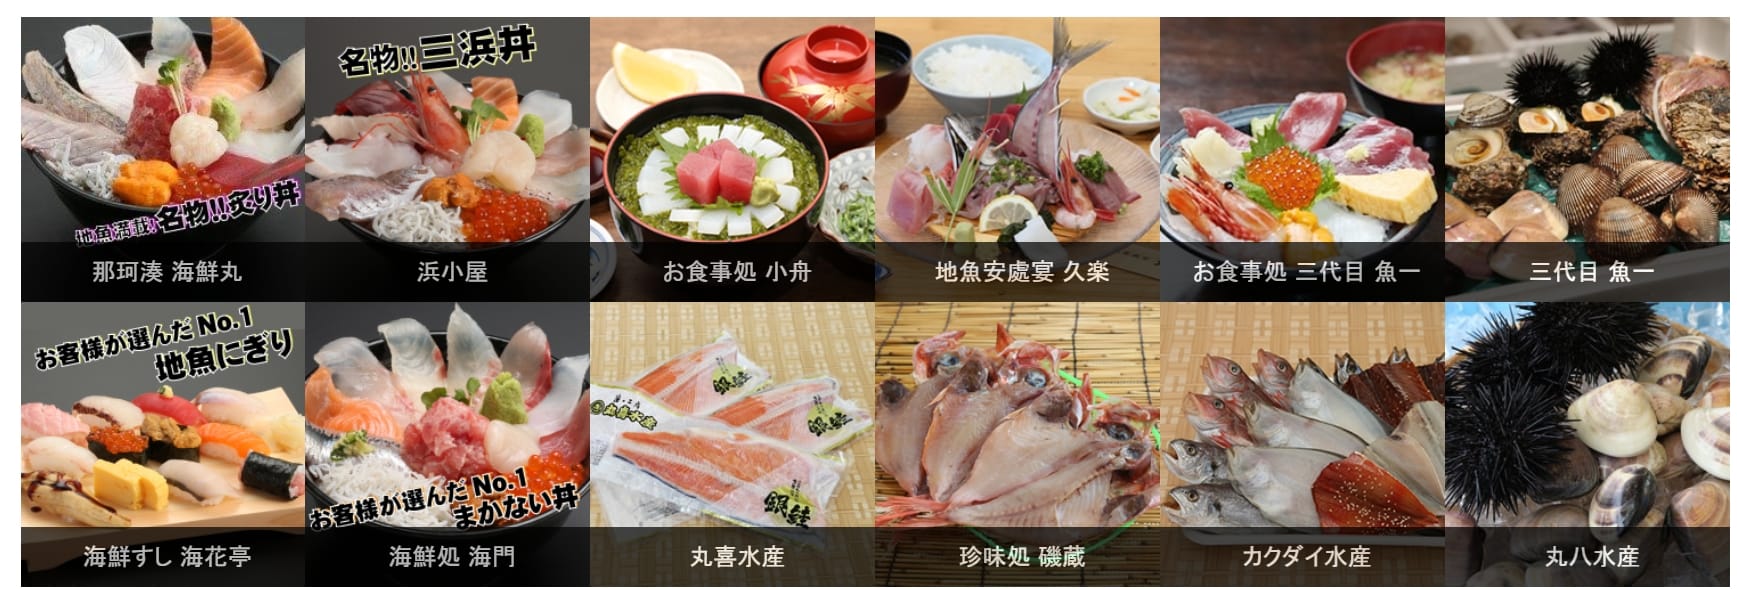 茨城那珂湊魚市場吃海鮮、新鮮便宜魚貨、美食整理參考